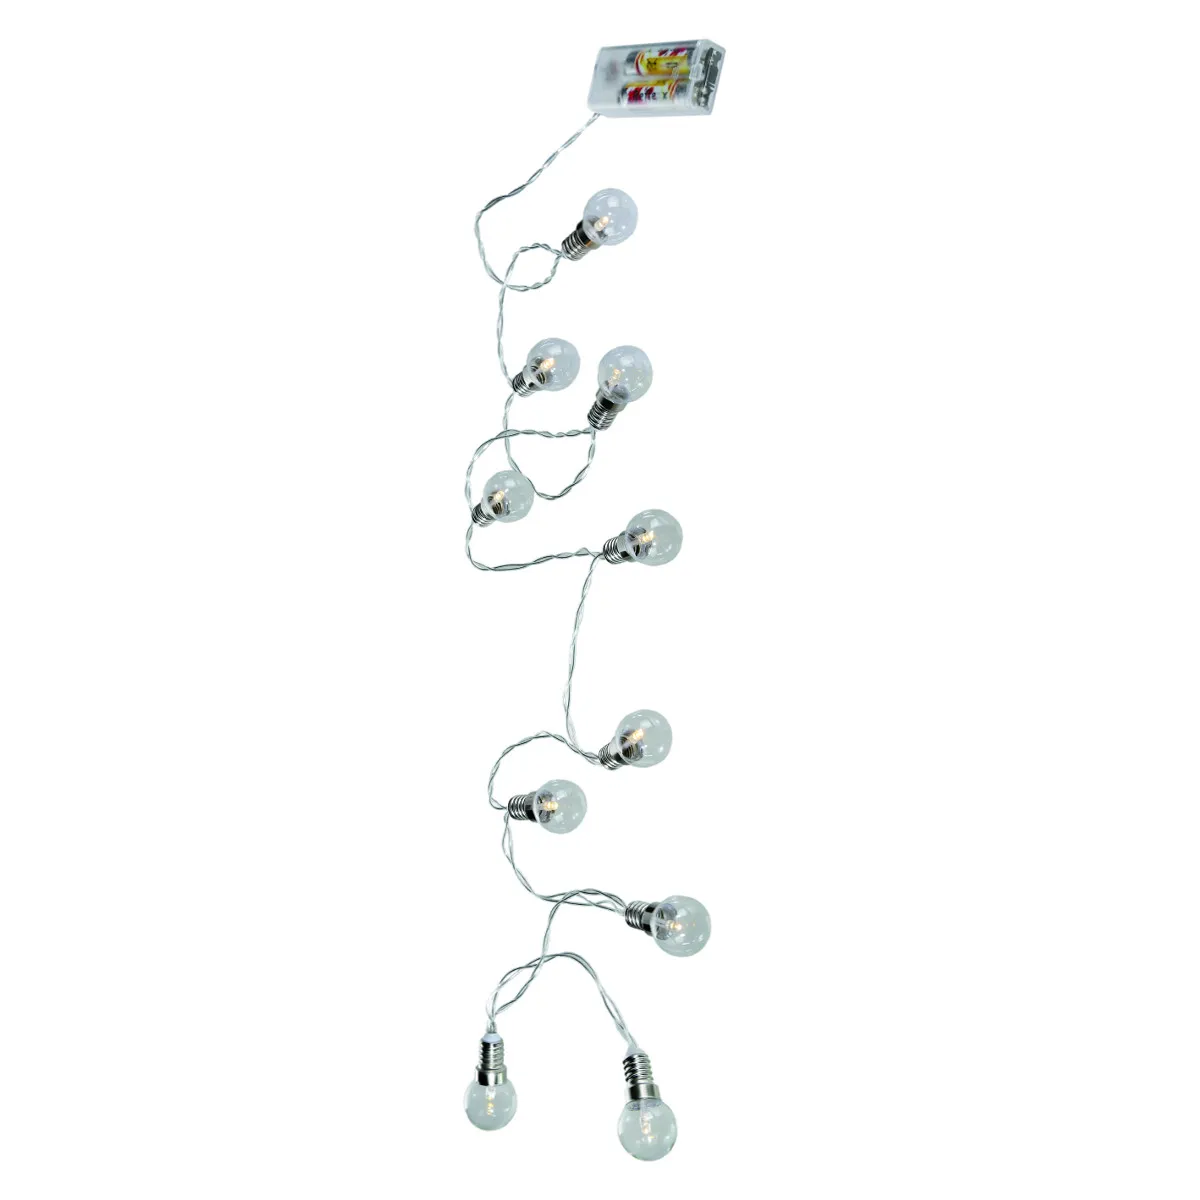 Guirlande lumineuse à LED Ampoule - Blanc